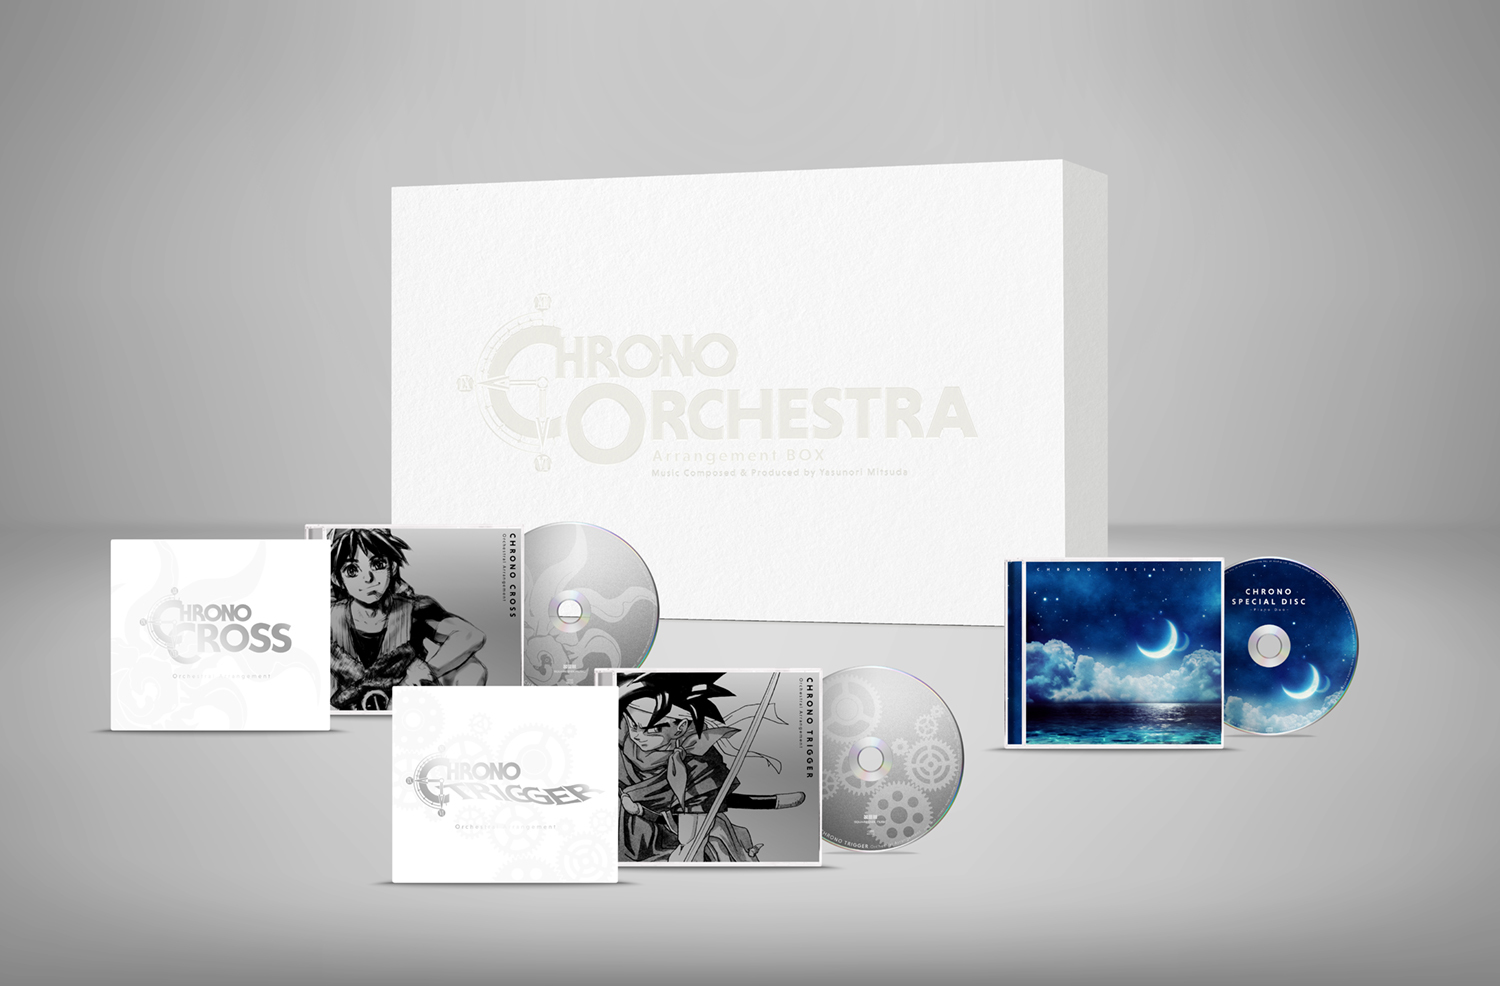 「クロノ」シリーズのオーケストラアレンジアルバム全3枚